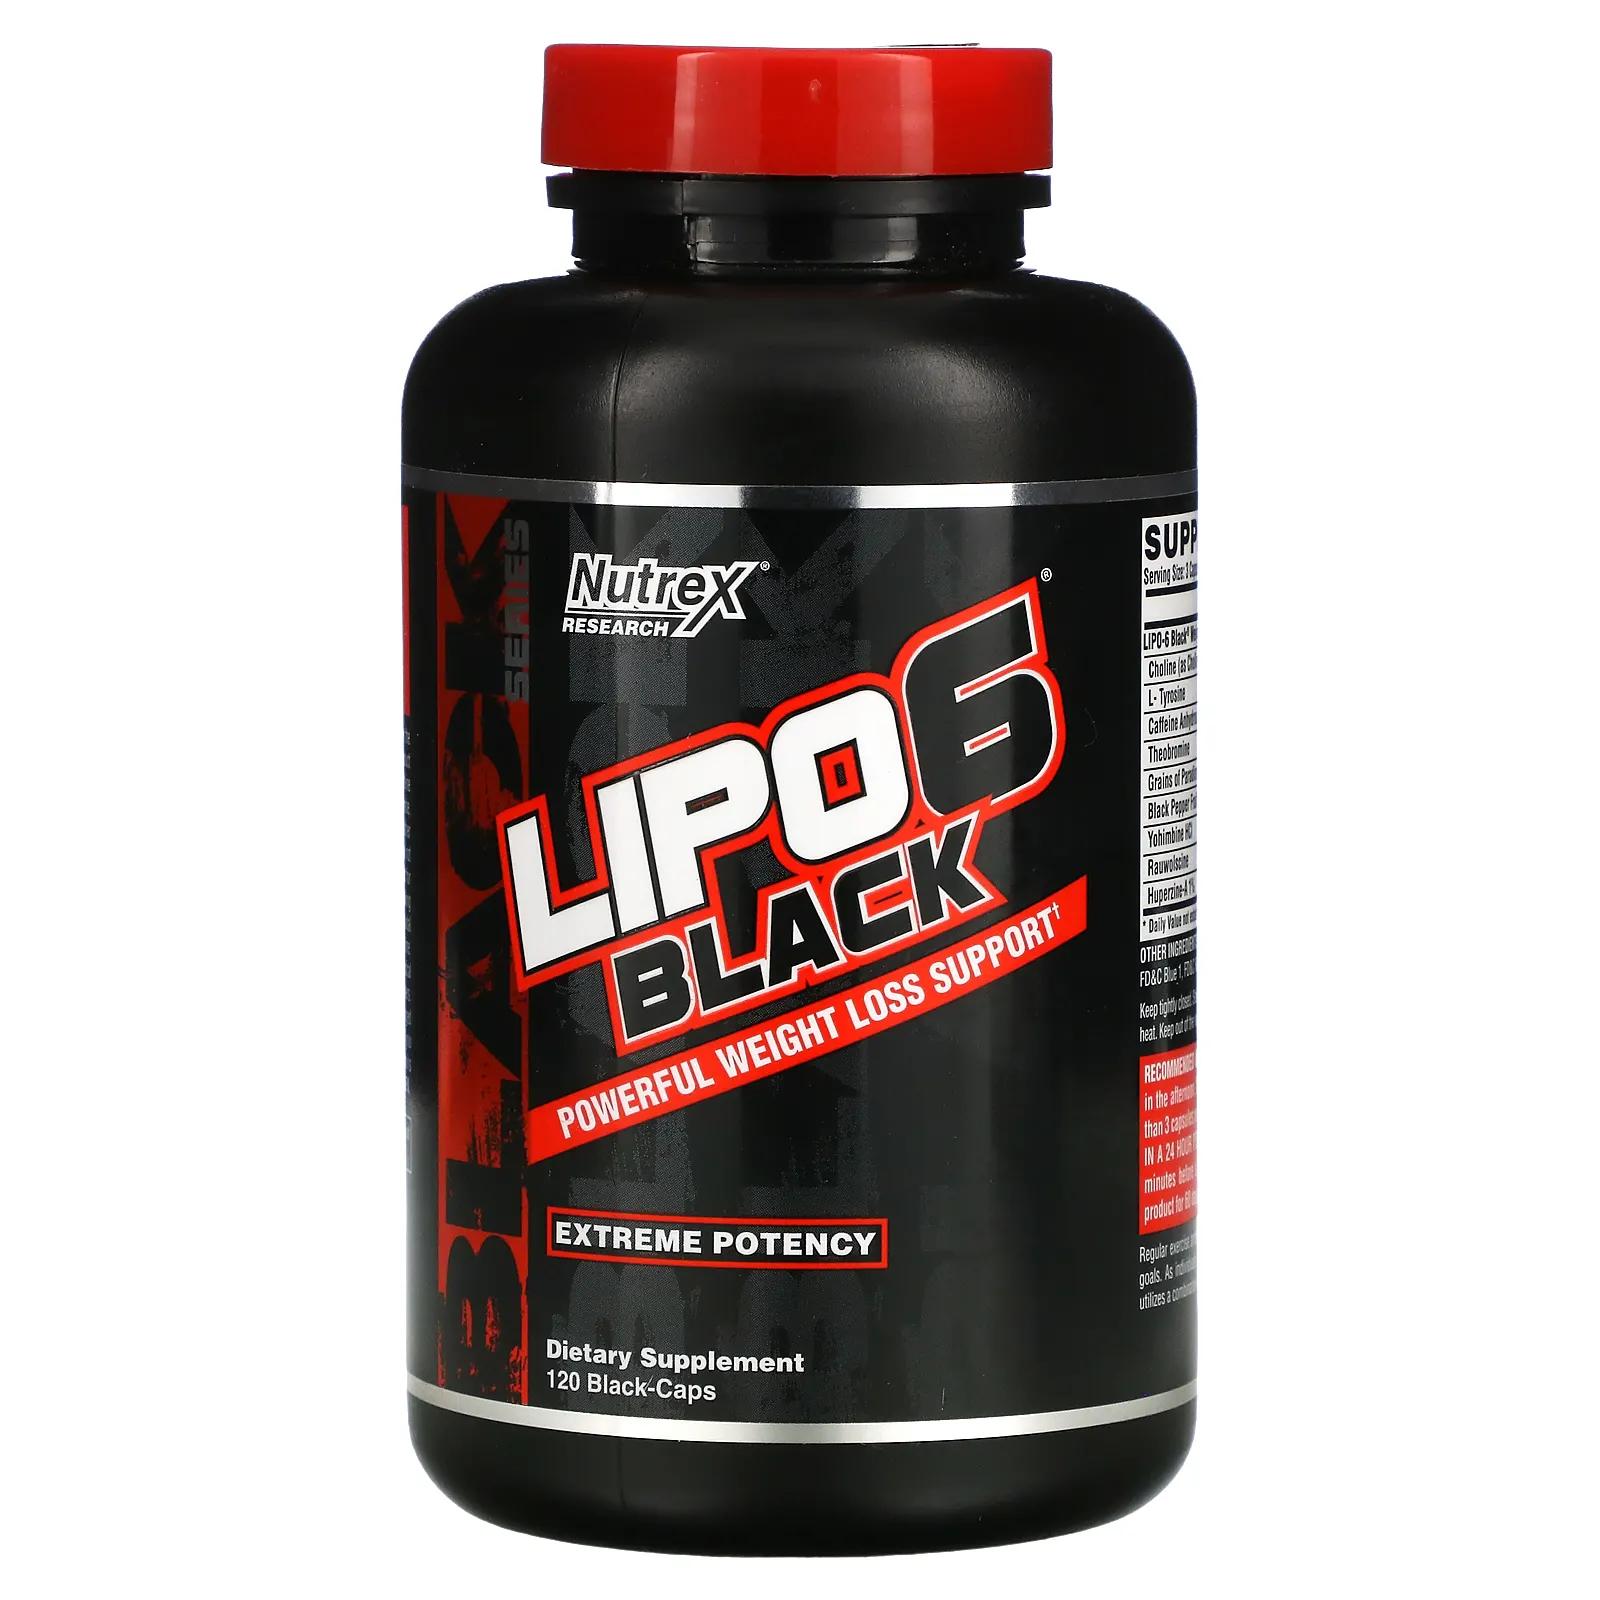 Nutrex Research Lipo-6 Black Extreme Potency 120 капсул цена и фото